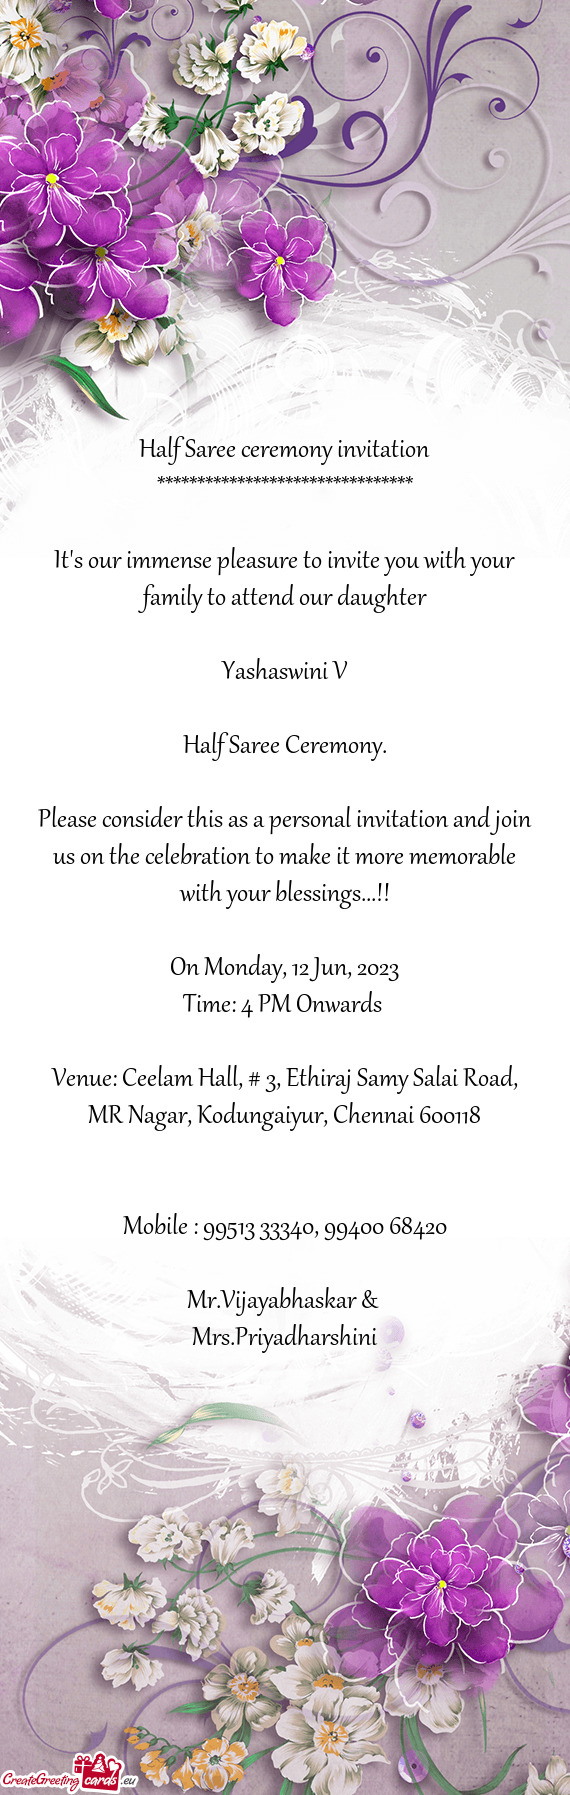 Venue: Ceelam Hall, # 3, Ethiraj Samy Salai Road, MR Nagar, Kodungaiyur, Chennai 600118